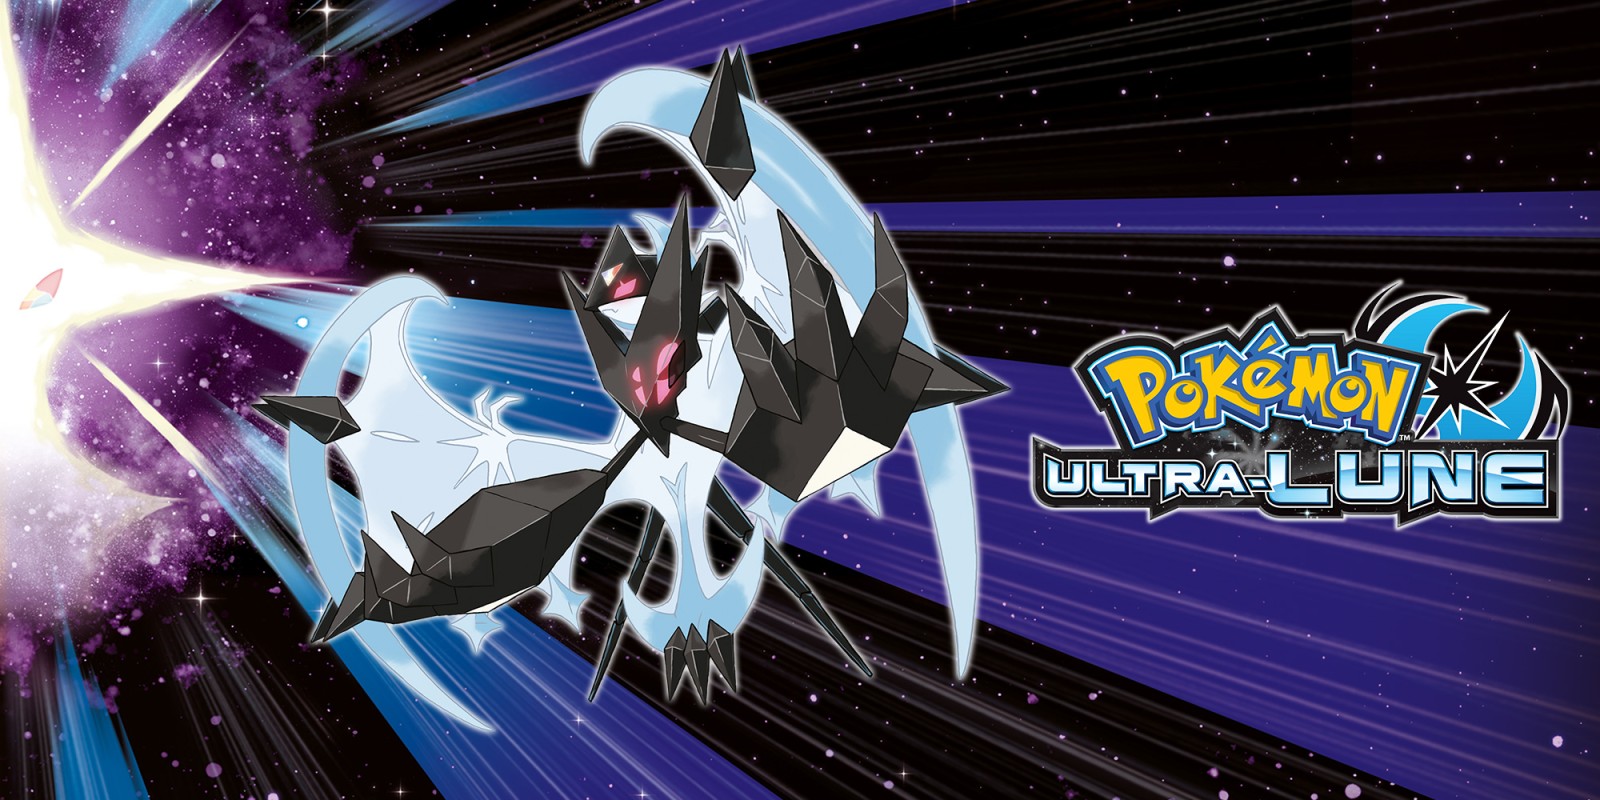 Pokémon Ultra-Lune